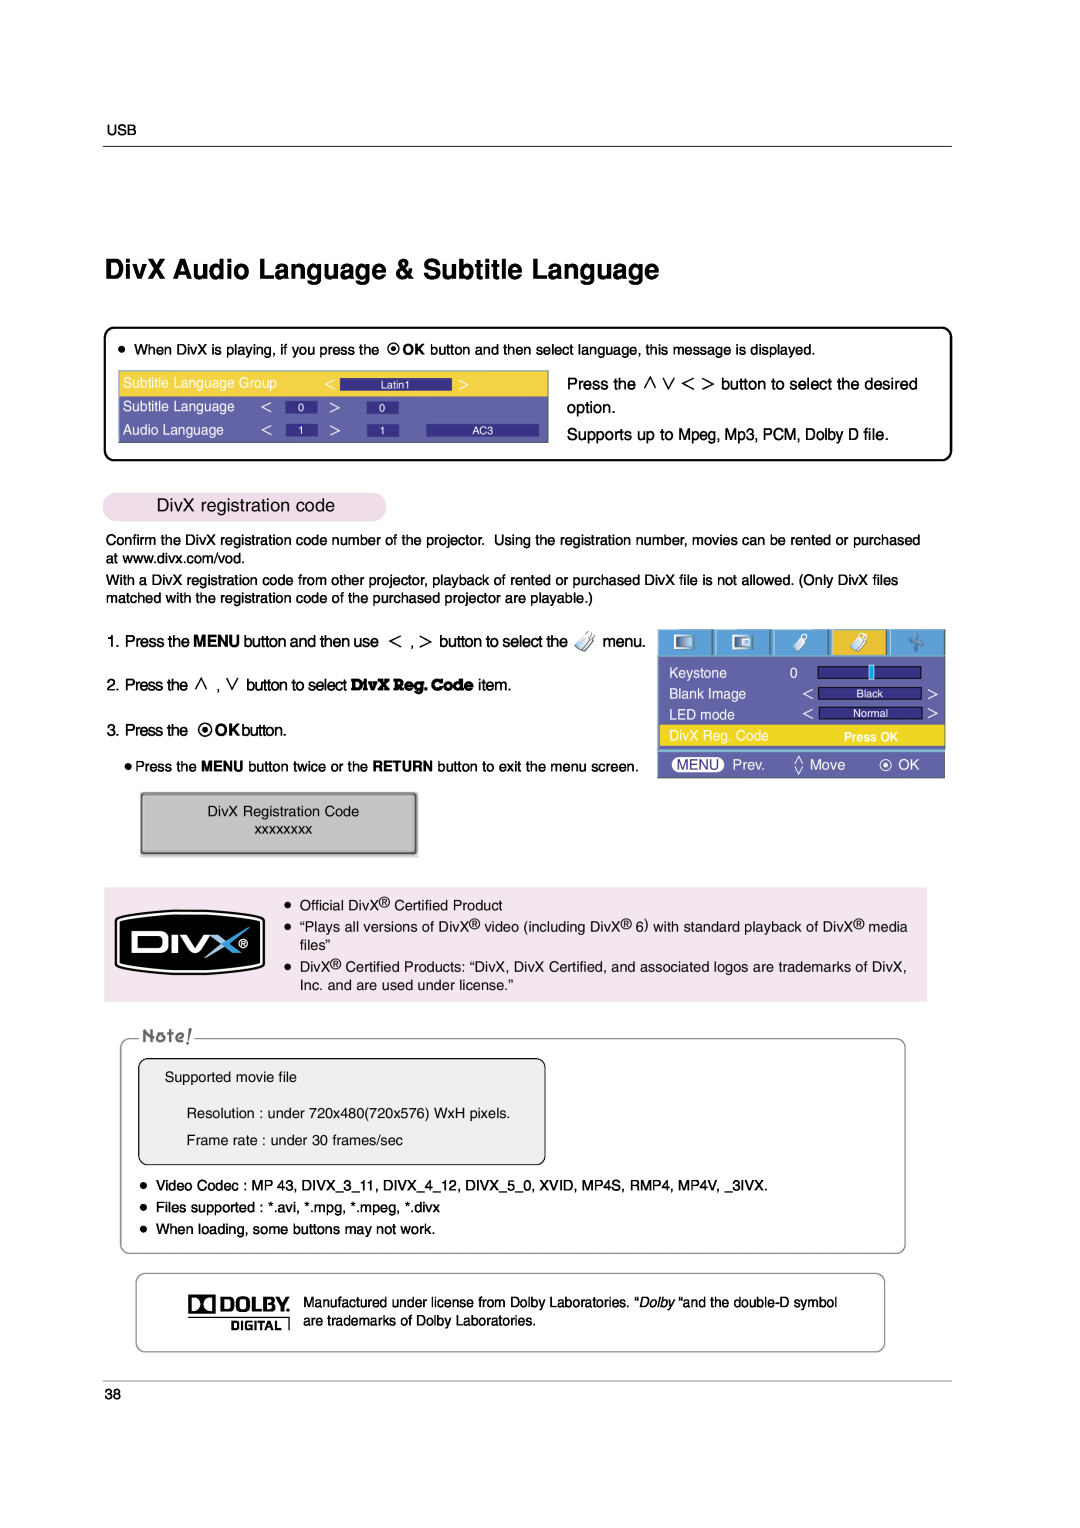 LG Electronics HS102 DivX Audio Language & Subtitle Language, DivX registration code, Press the MENU button and then use 